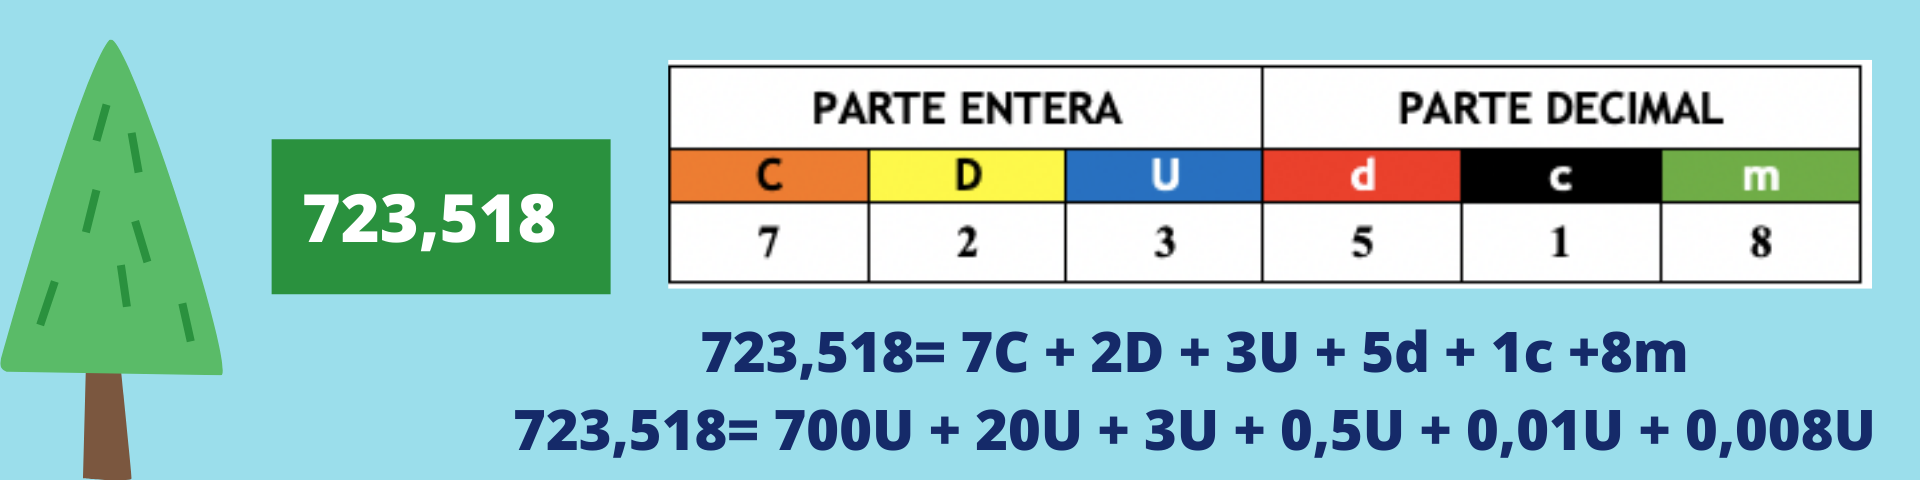 La imagen muestra la representación de los números decimales